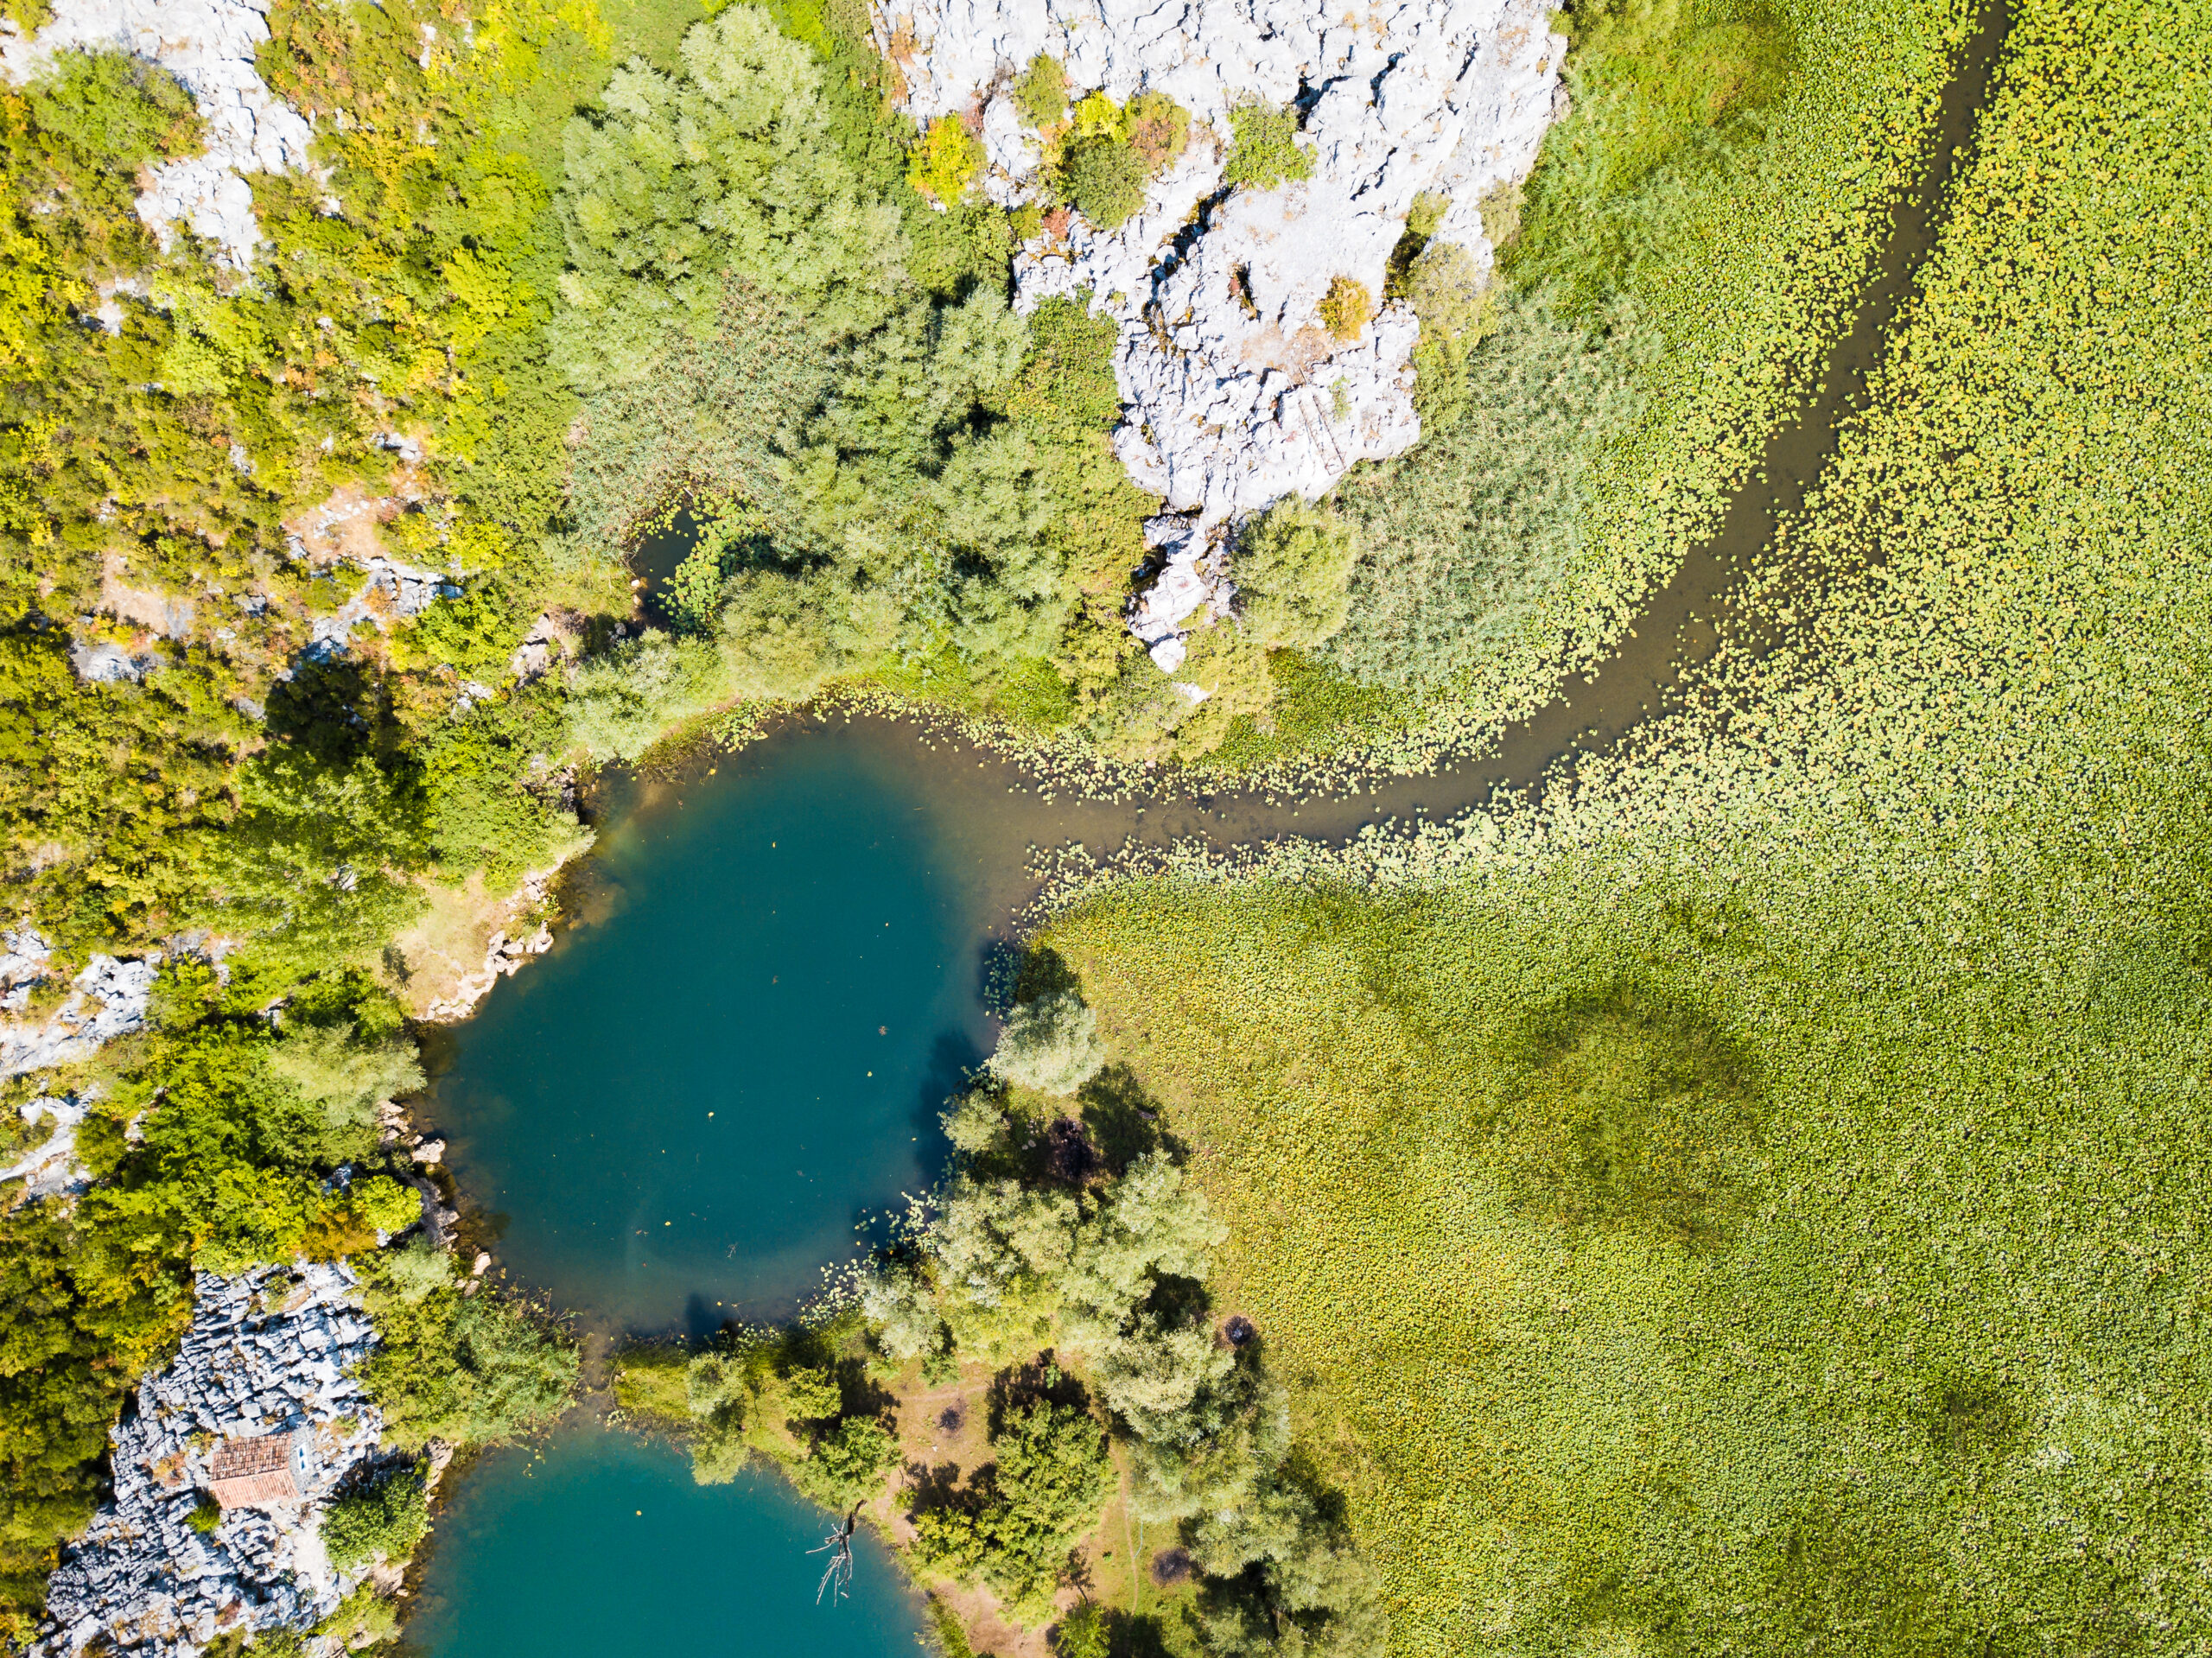 Underwater springs in Skadar Lake National Park in Montenegro.